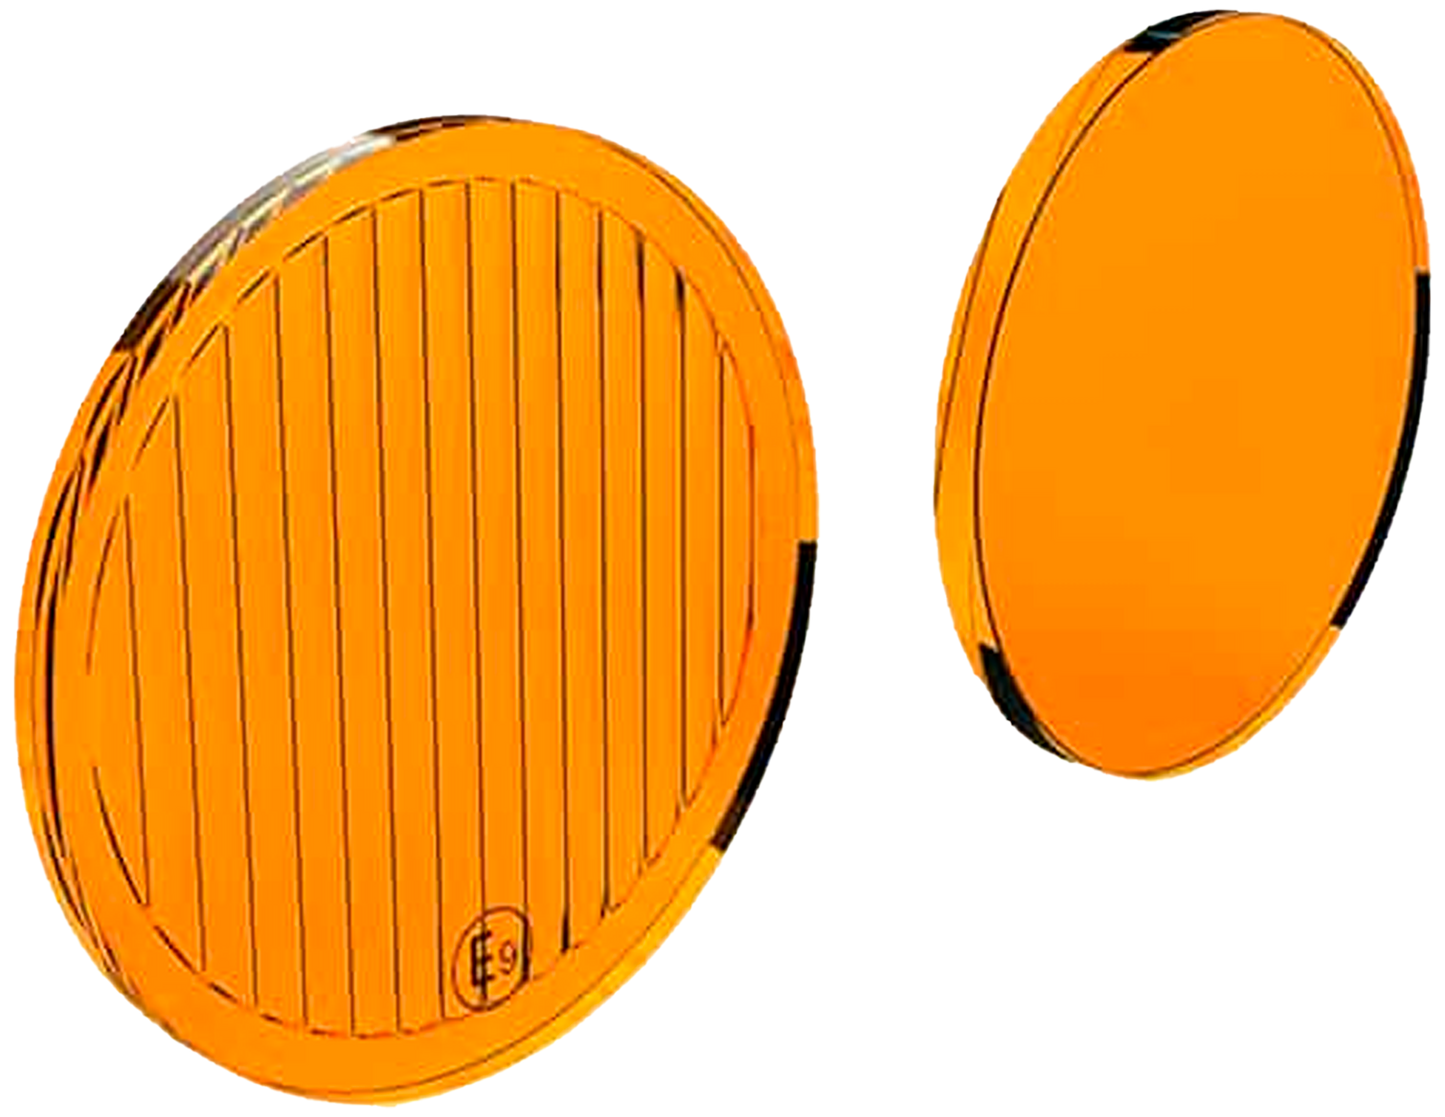 Kit de lentes DENALI TriOptic para luces DM 2.0